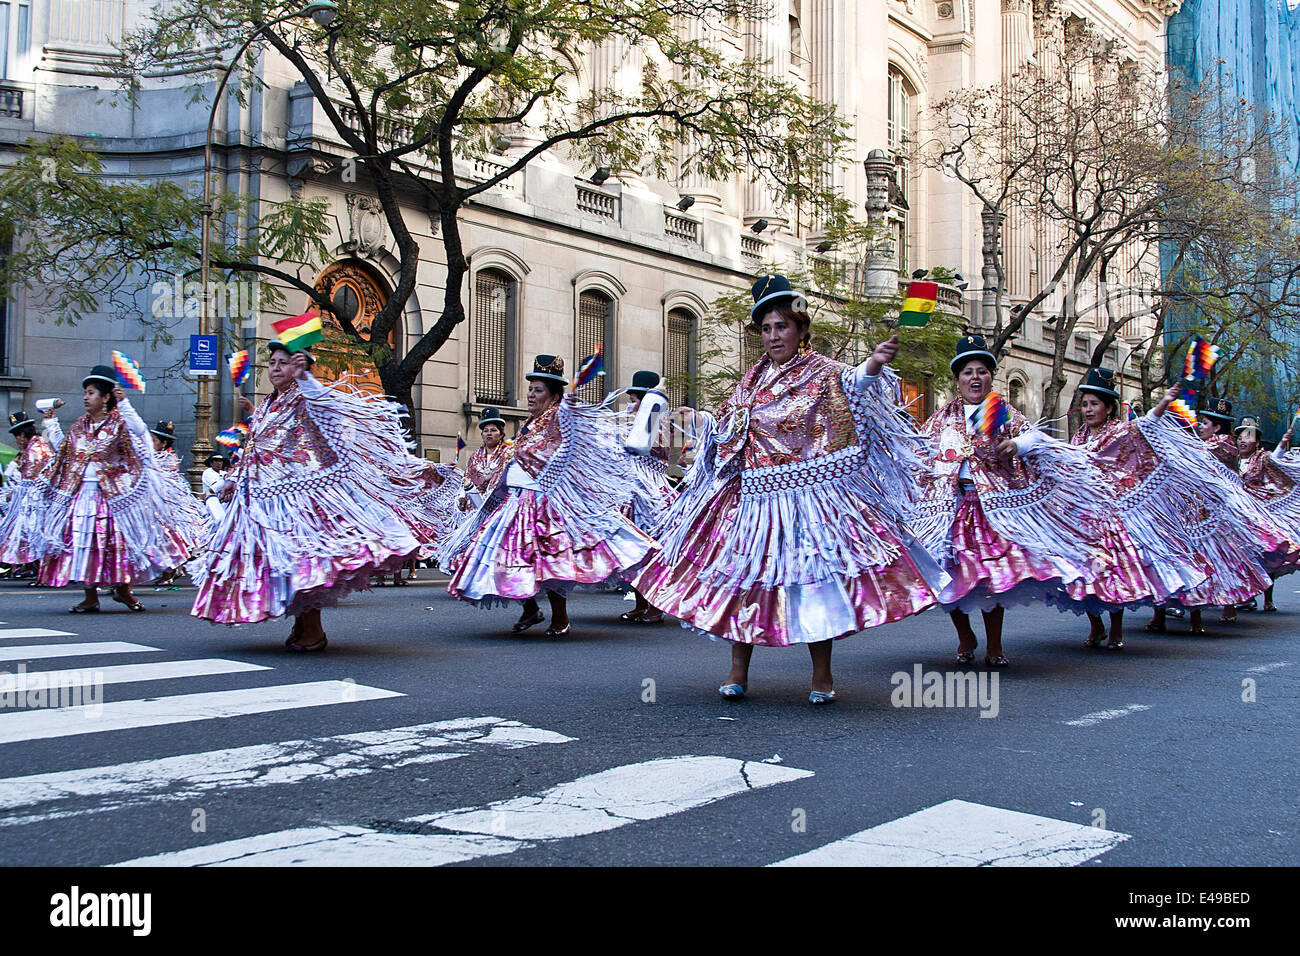 Karneval in Bolivien gelebt und gefeiert über mehrere Tage in jeder Stadt und Stadt Parade-Gruppen-Tanz und Volkstanz Stockfoto